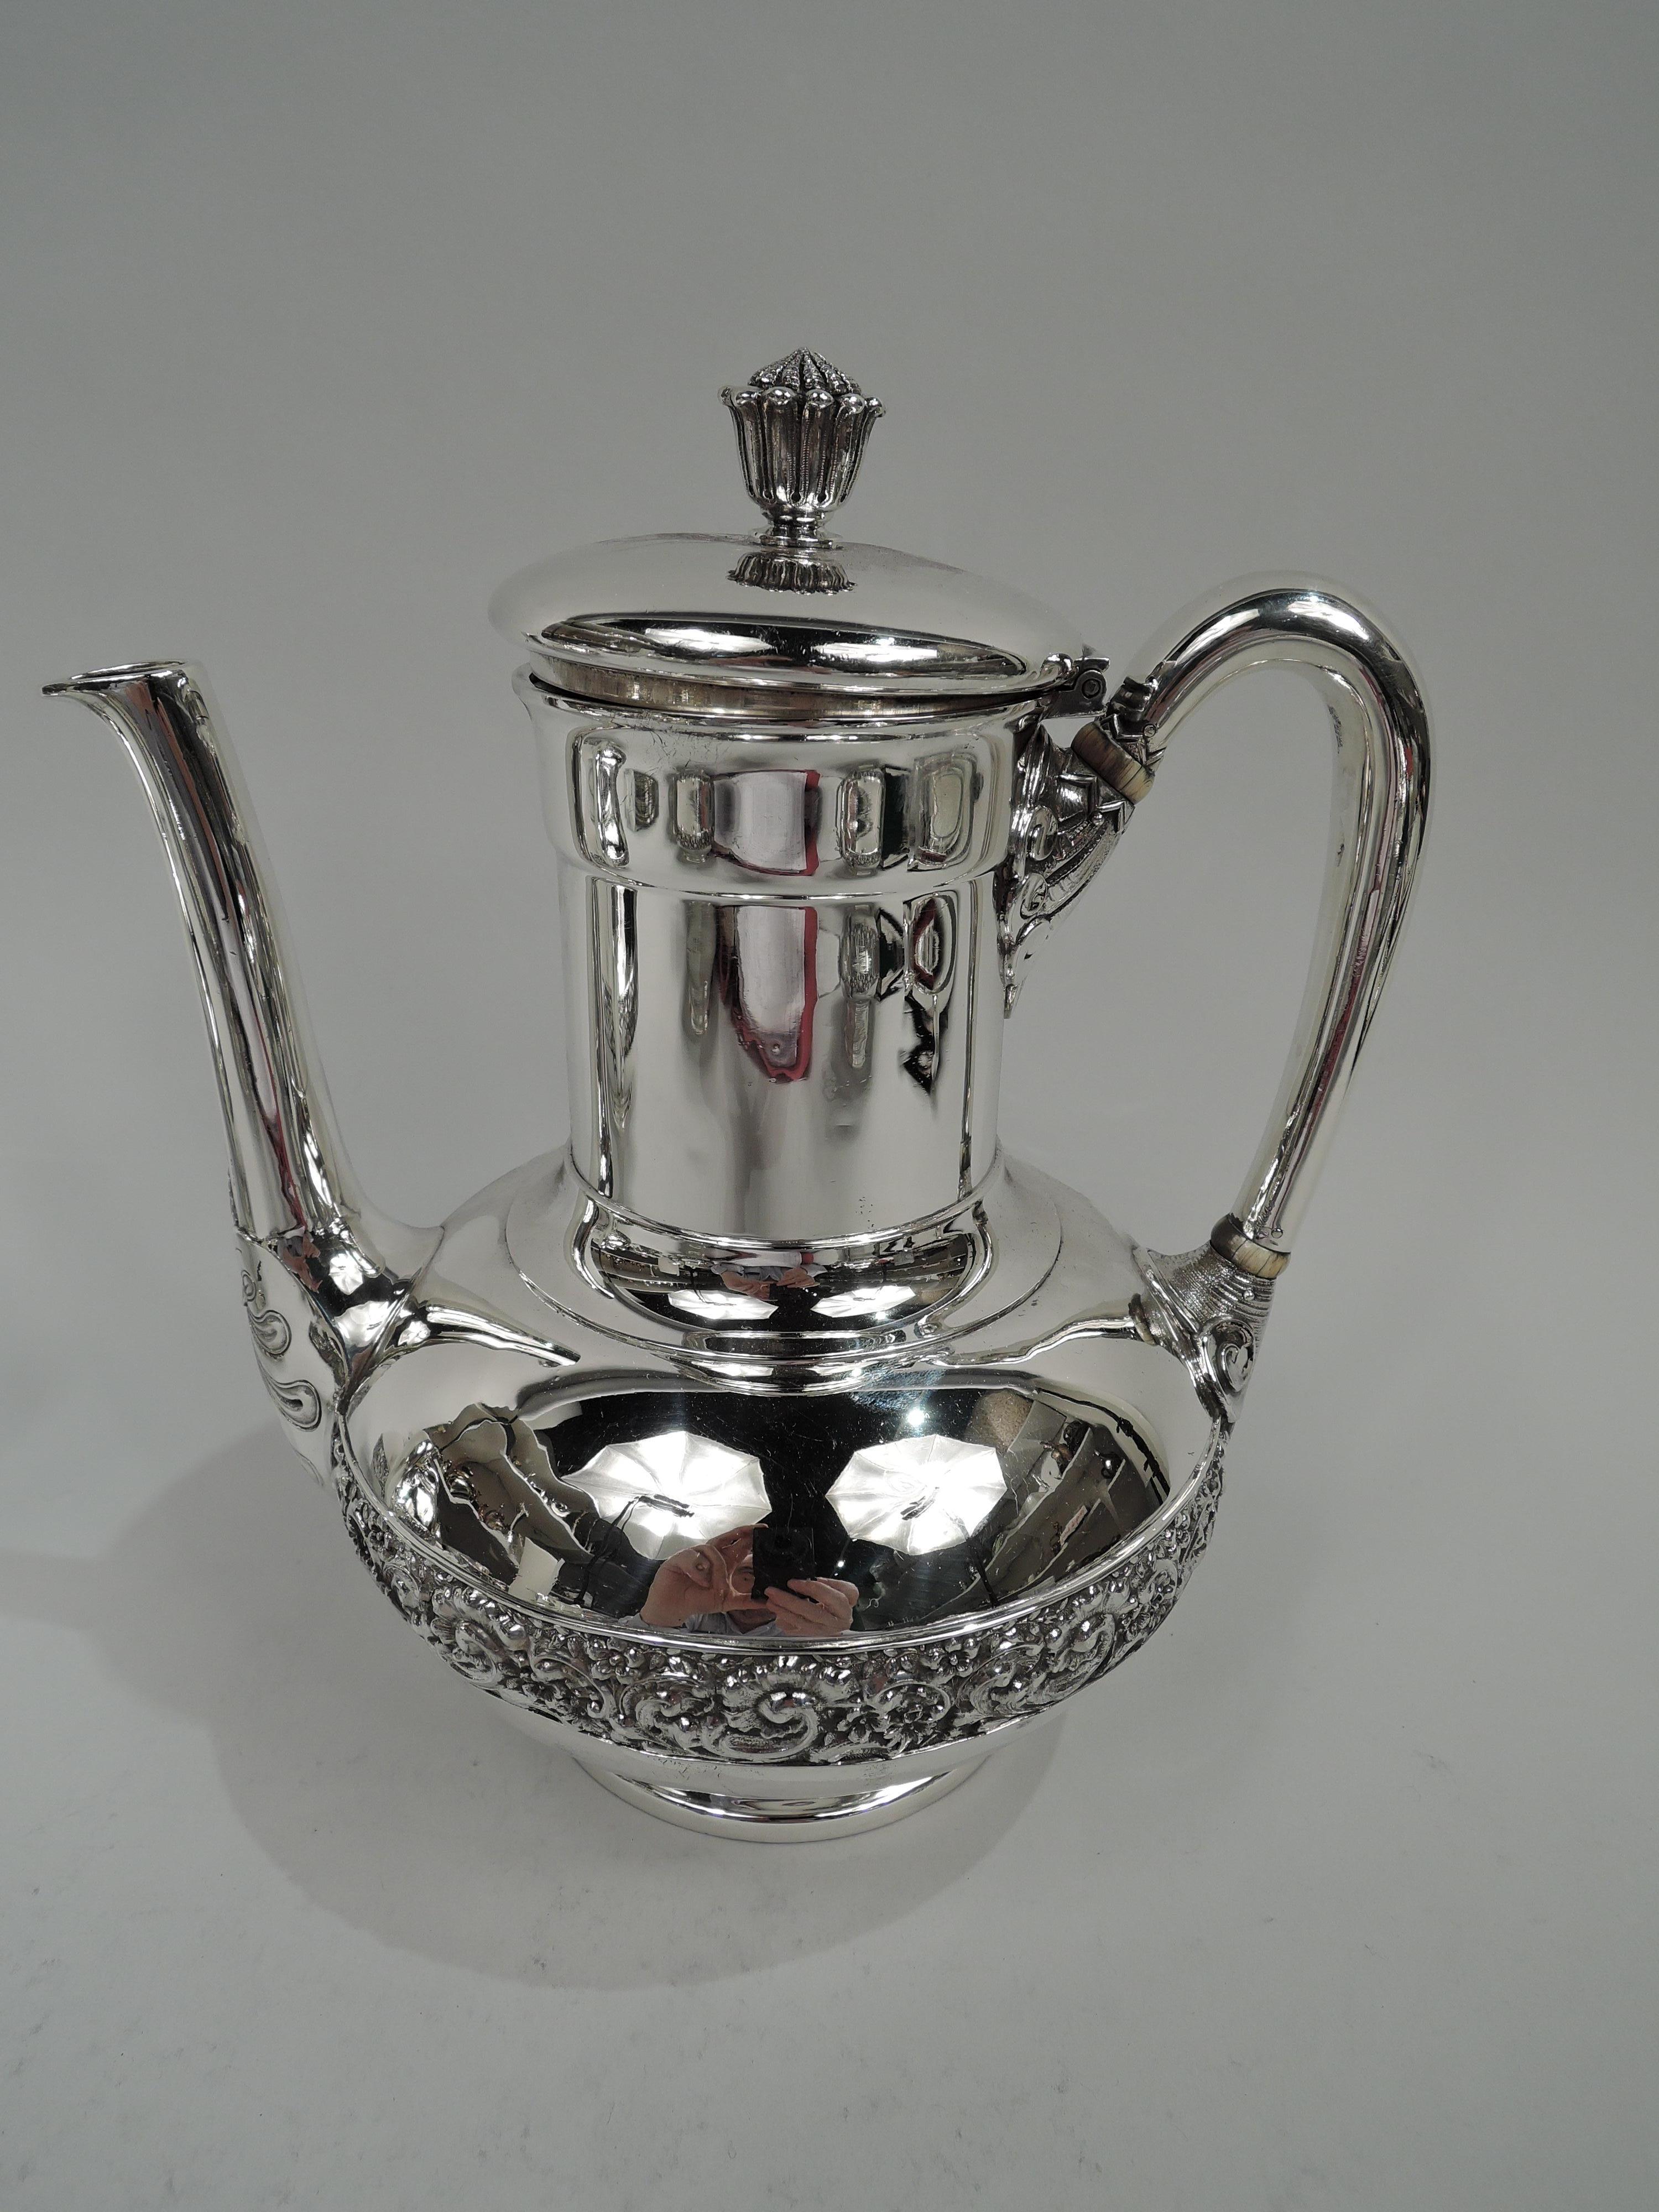 Viktorianisches klassisches Kaffee- und Teeservice aus Sterlingsilber. Hergestellt von Tiffany & Co. in New York. Dieses Set besteht aus Kaffeekanne, Teekanne, Milchkännchen, Zucker und Abfallbehälter.

Jede: Bauchige Schale auf konkavem Fußring.